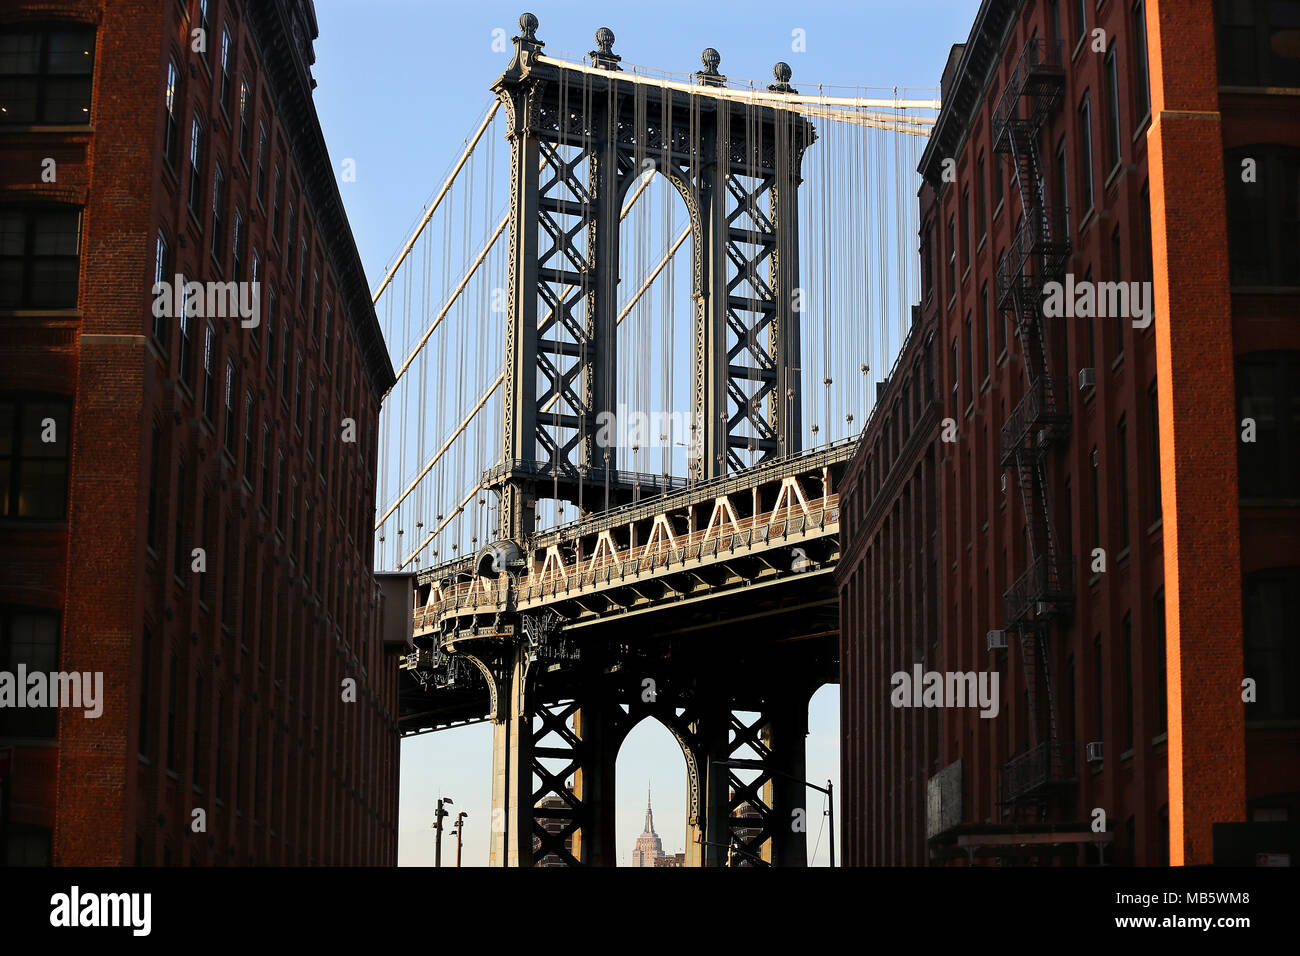 Manhattan Bridge come si vede da Dumbo, Brooklyn con la parte superiore dell'Empire State Building visibile nella città di New York, Stati Uniti d'America Foto Stock